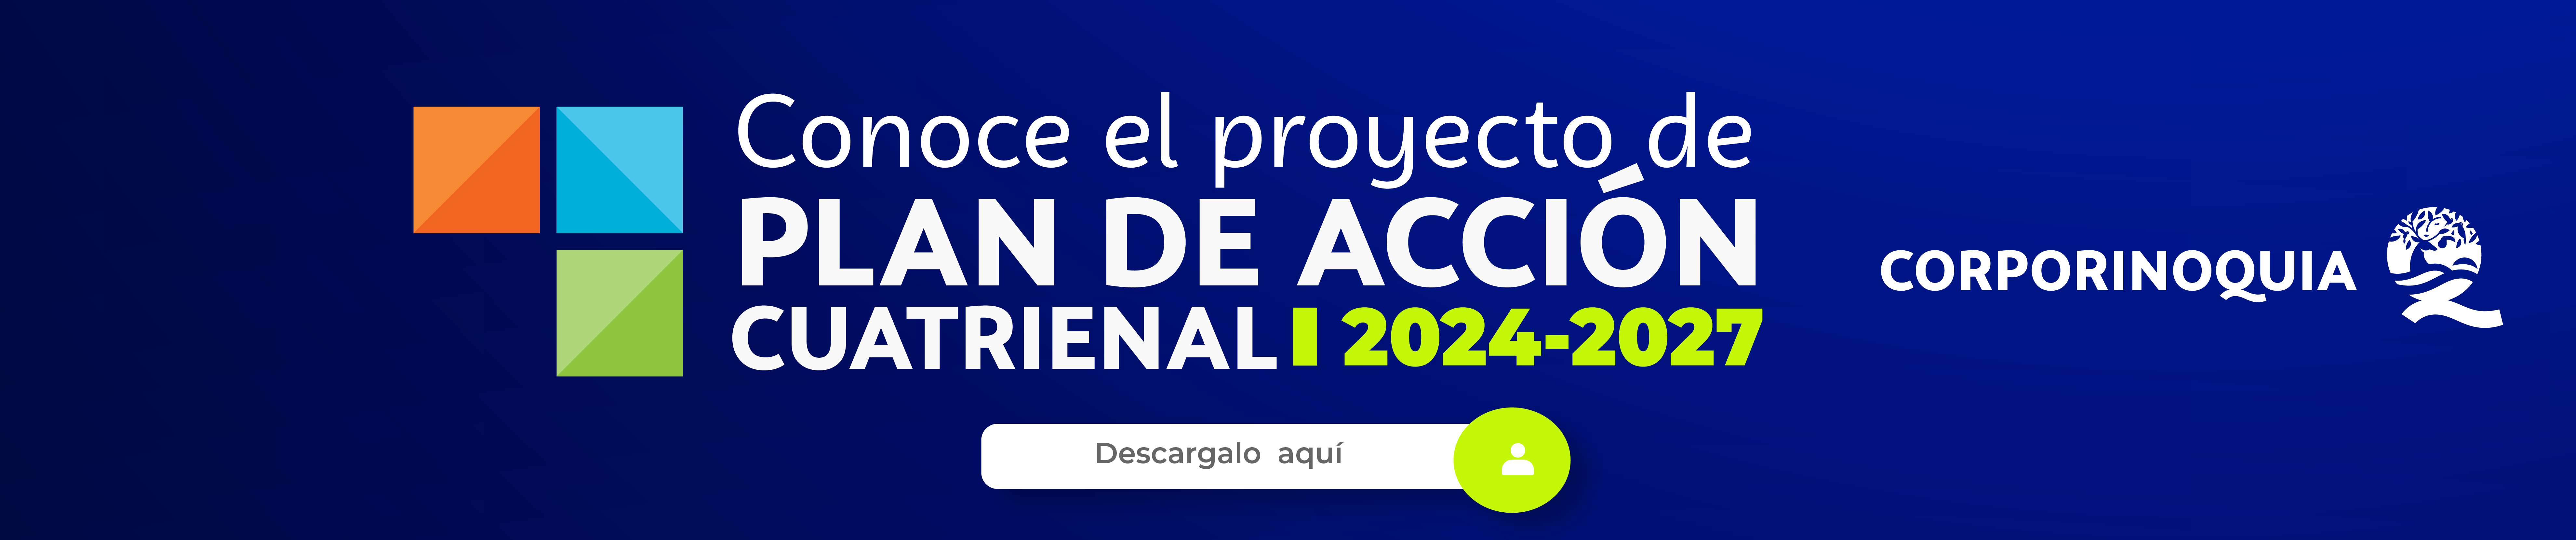 banner_proyecto_Mesa_de_trabajo_1